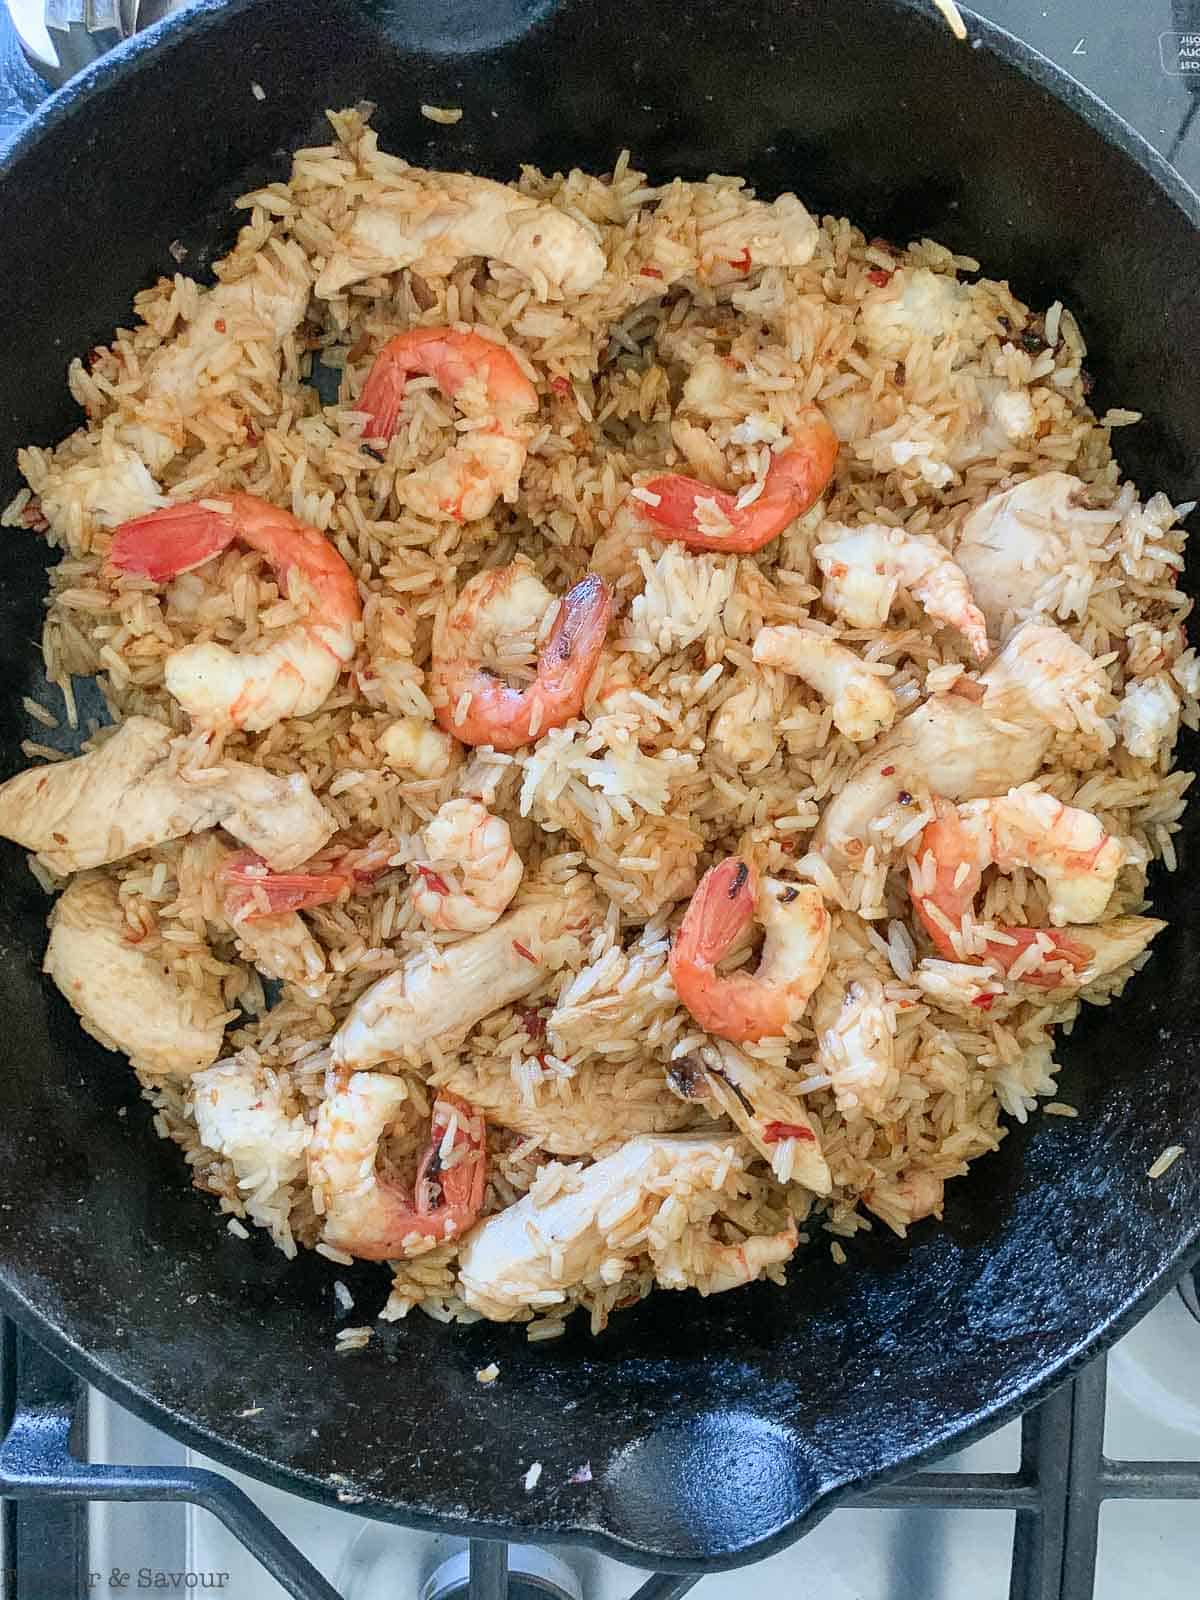 Adding seasoning to nasi goreng.